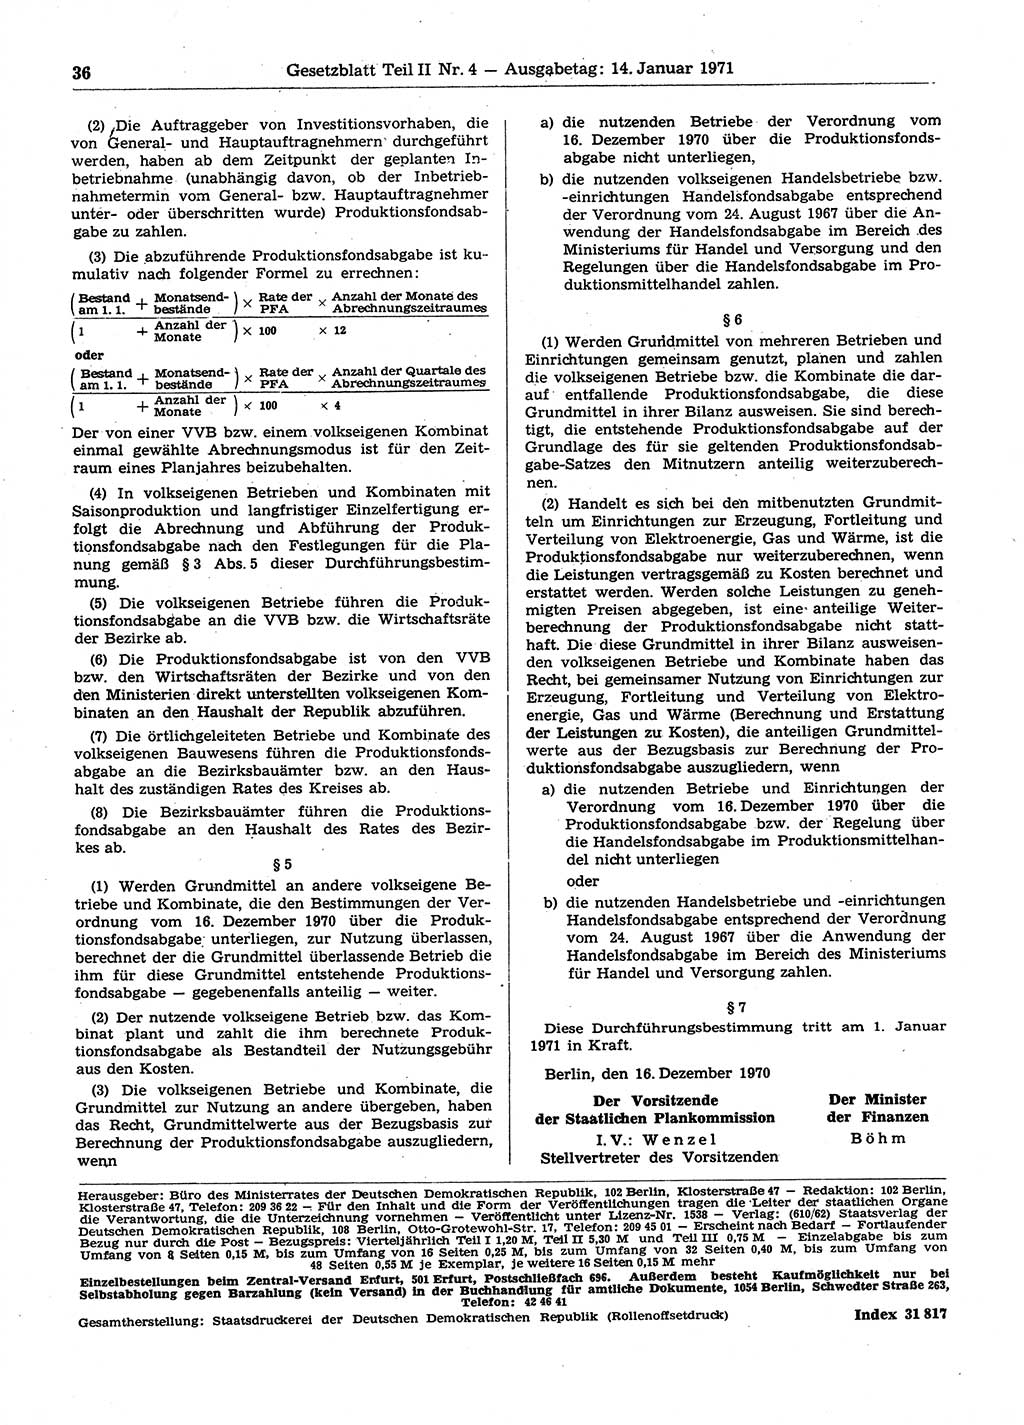 Gesetzblatt (GBl.) der Deutschen Demokratischen Republik (DDR) Teil ⅠⅠ 1971, Seite 36 (GBl. DDR ⅠⅠ 1971, S. 36)